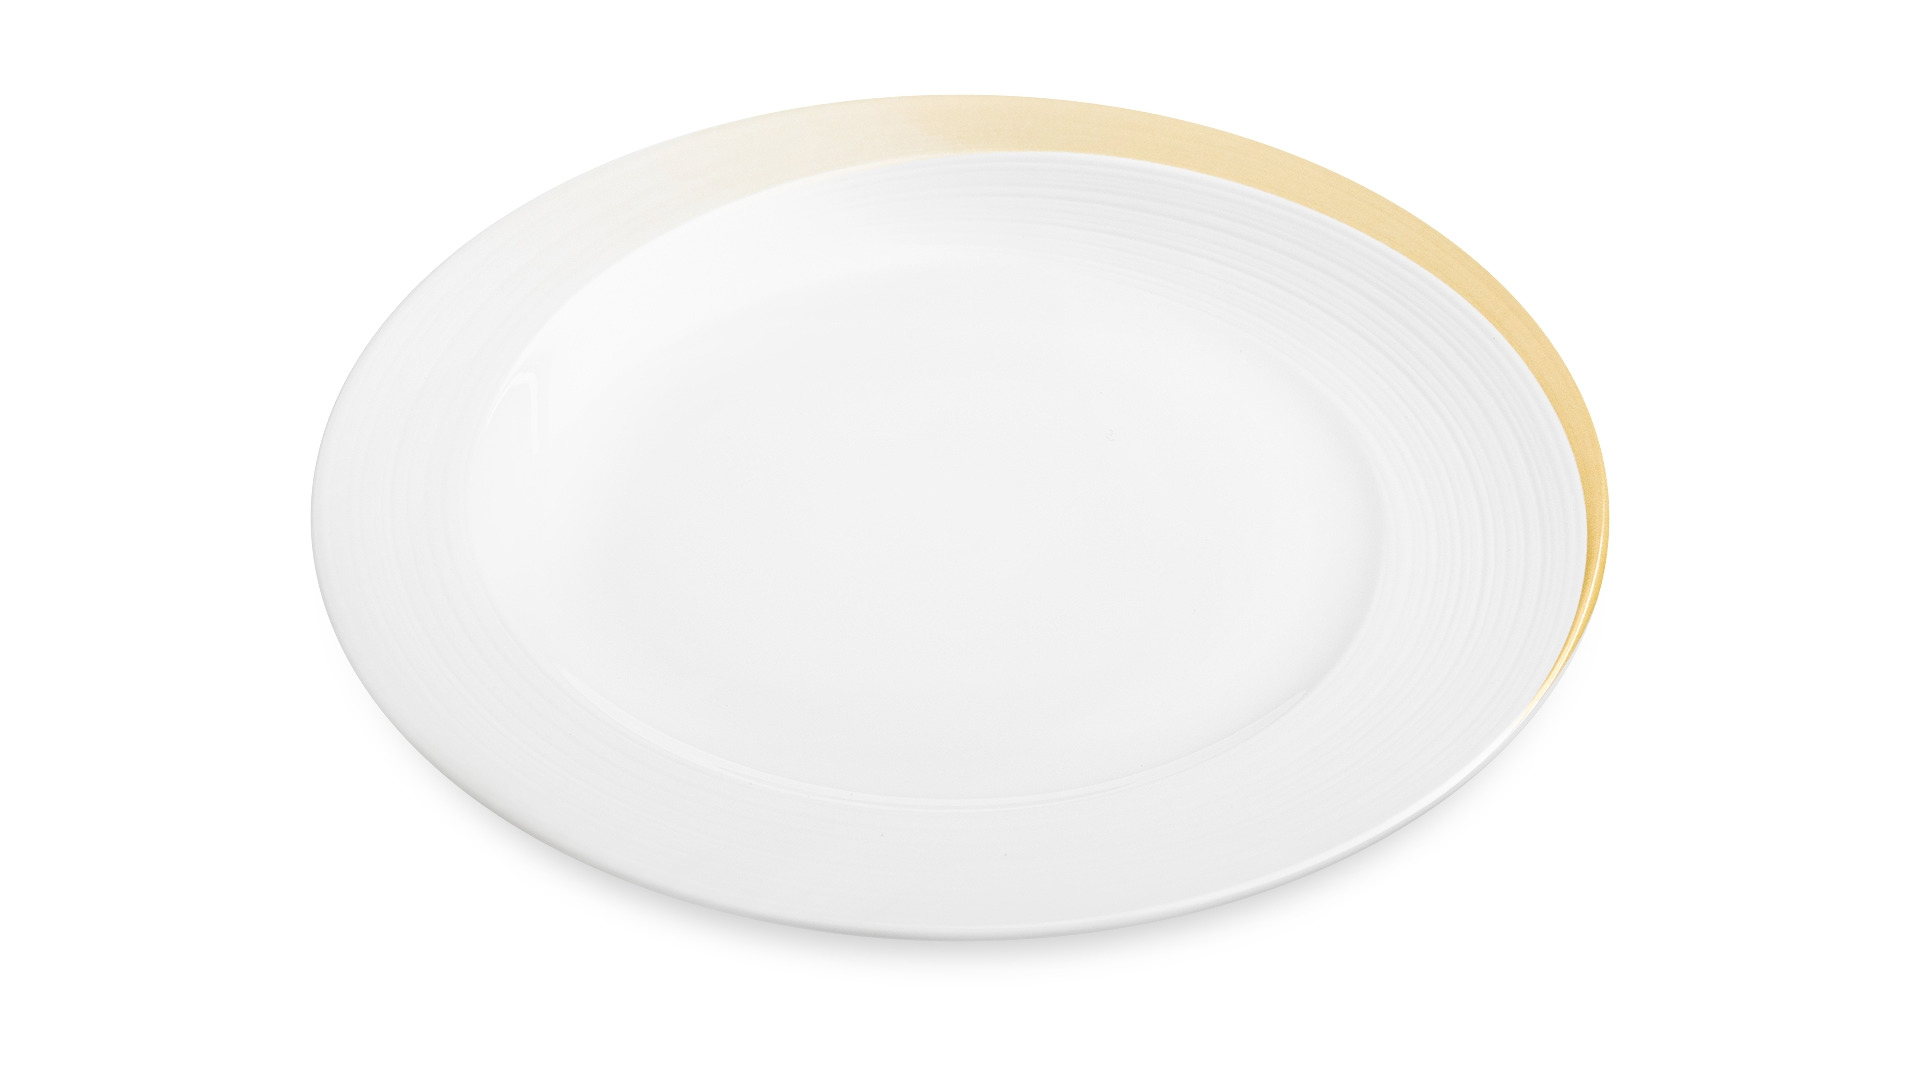 Тарелка закусочная Narumi Золотой жемчуг 23 см, фарфор костяной